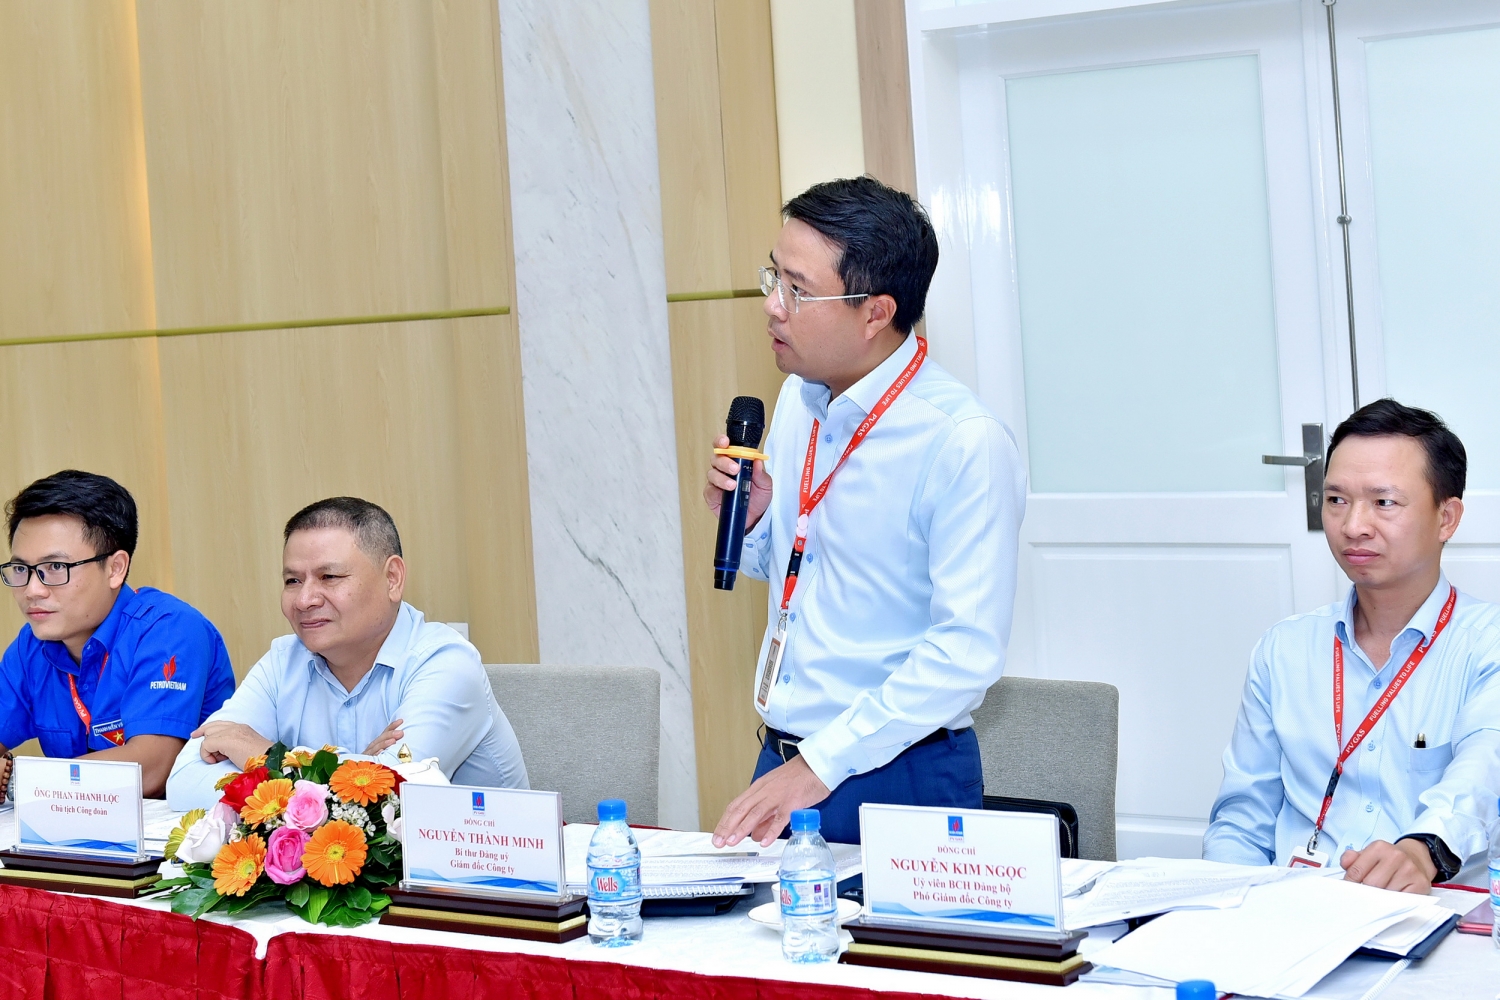 Đồng chí Nguyễn Thành Minh – Bí thư Đảng ủy, Giám đốc Công ty phát biểu đánh giá cao vị trí, vai trò cũng như sự đóng góp của Đoàn viên thanh niên KĐN